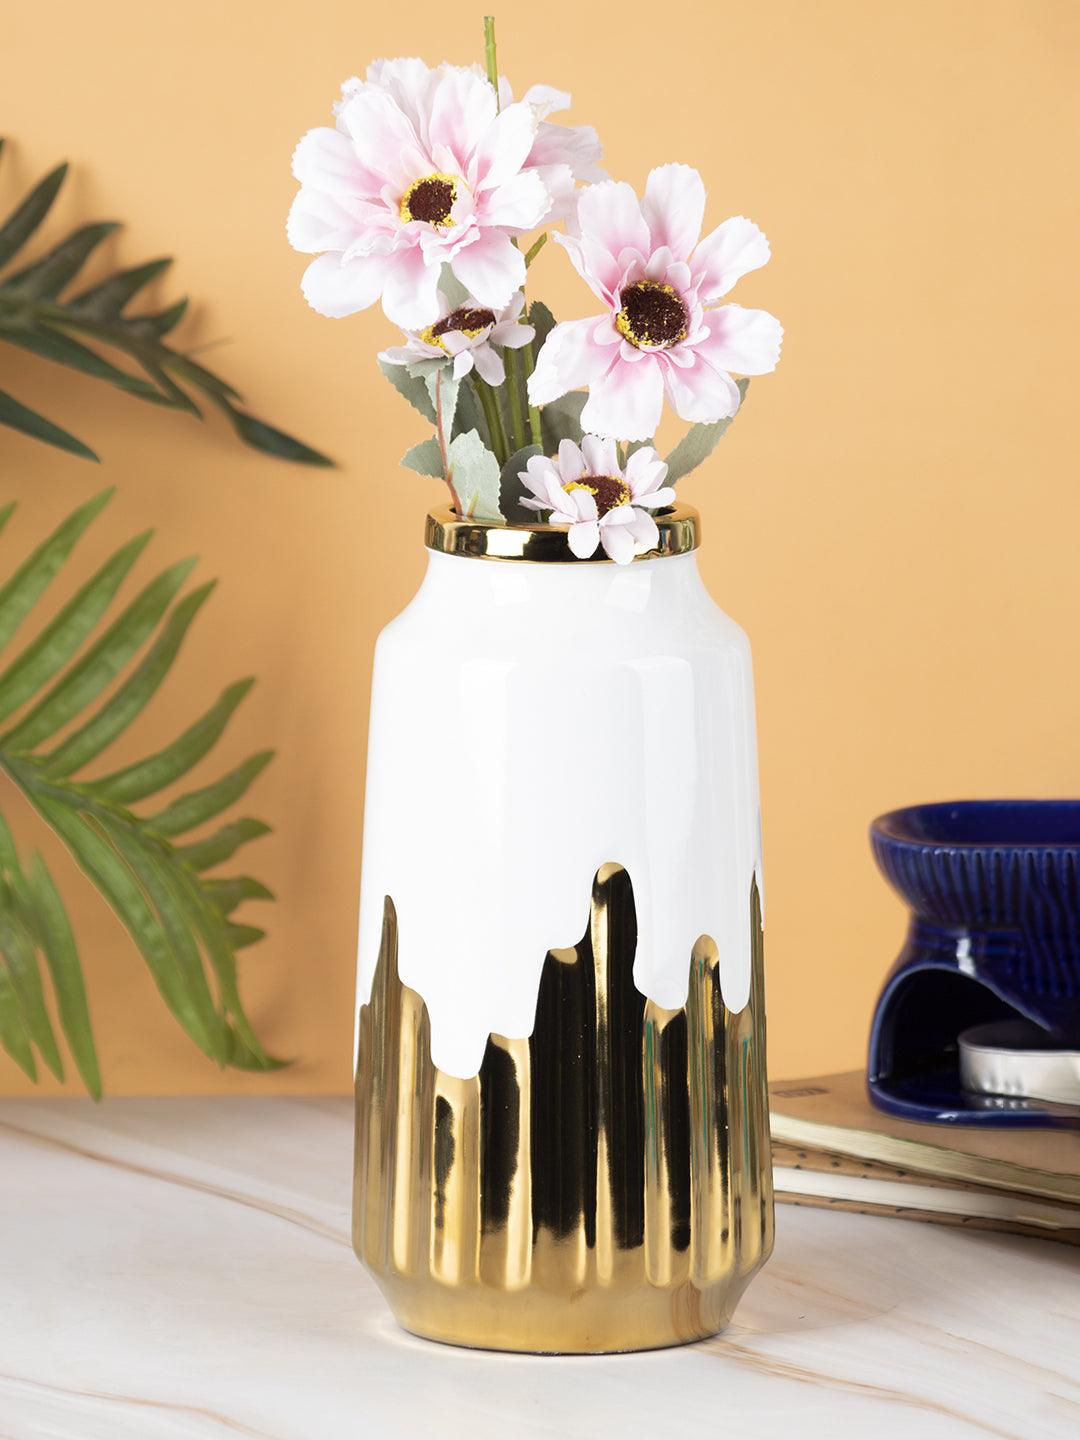 VON CASA Ceramic White +Gold Cyclendrical Vase - VON CASA